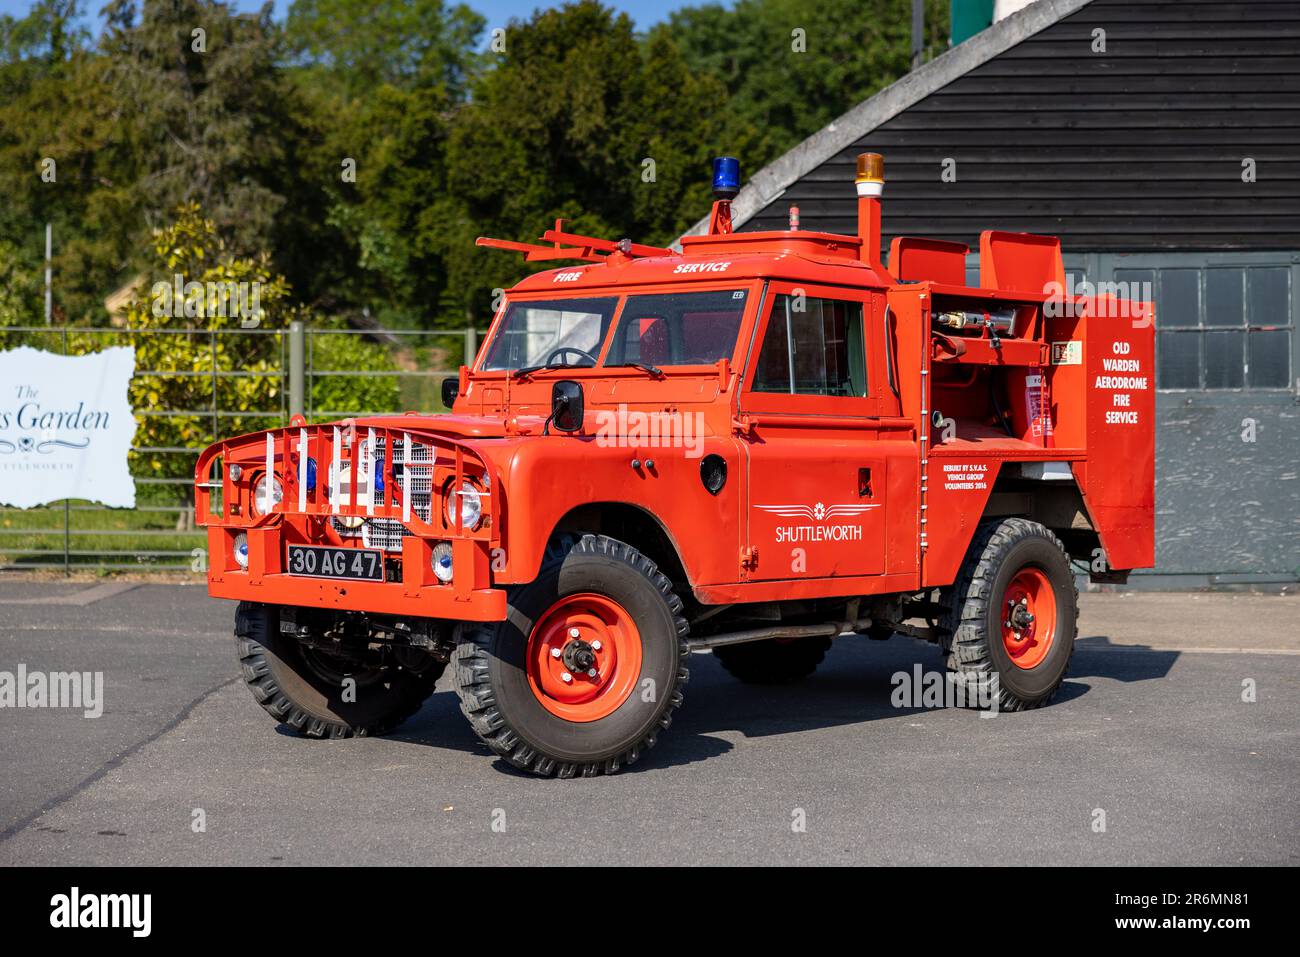 Trouvez Land Rover Fire Rescue + Boat en ligne